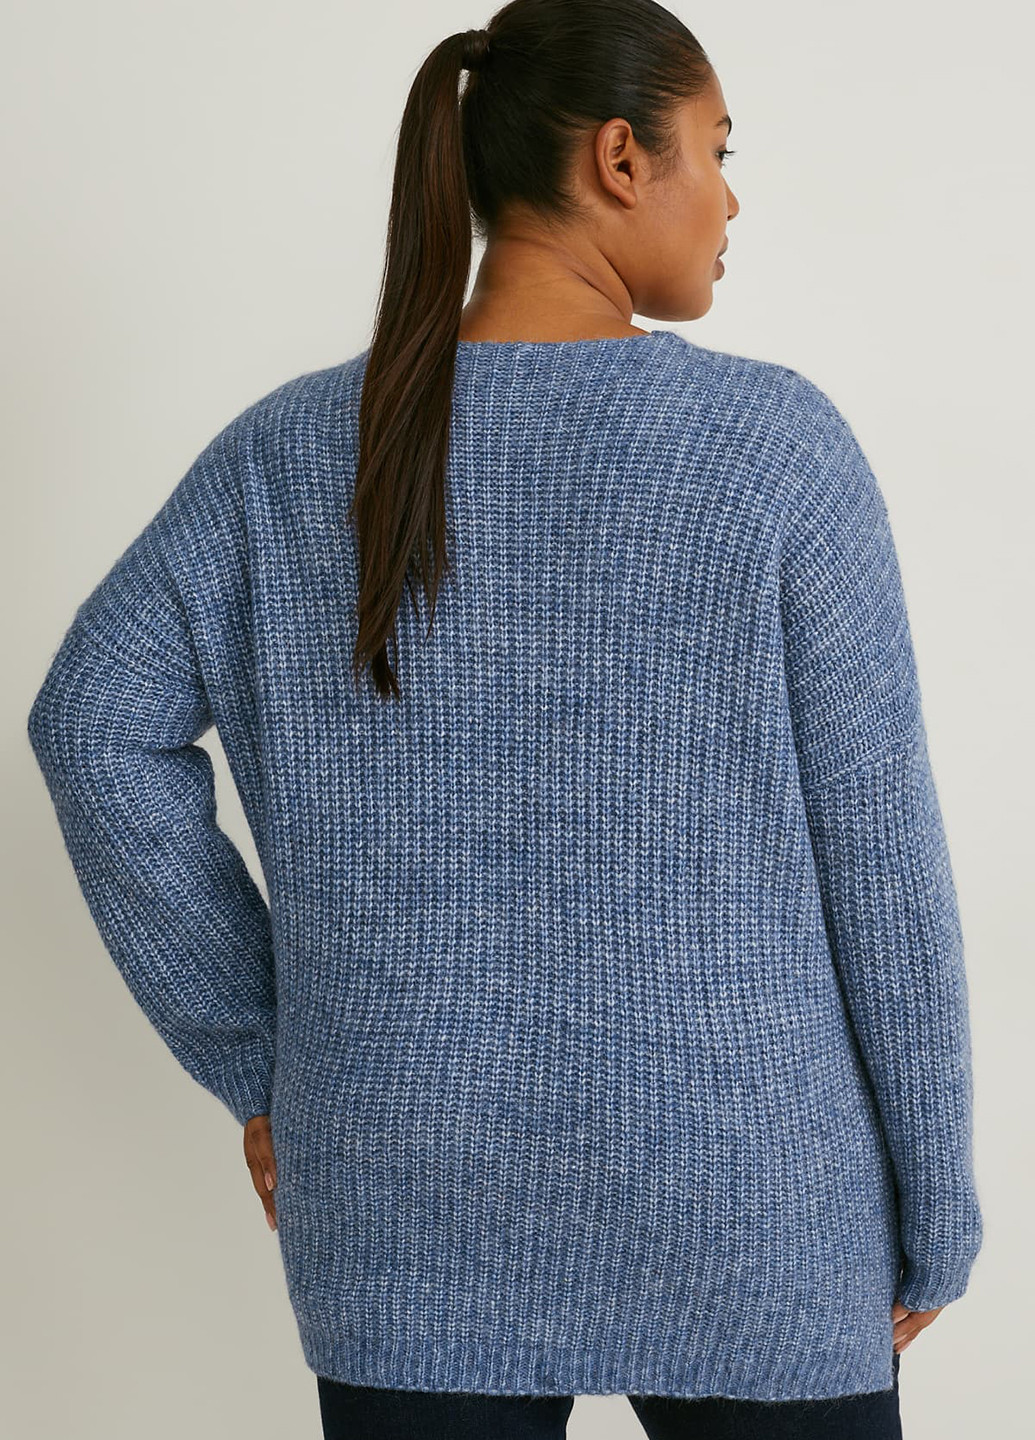 Светло-синий демисезонный пуловер пуловер C&A